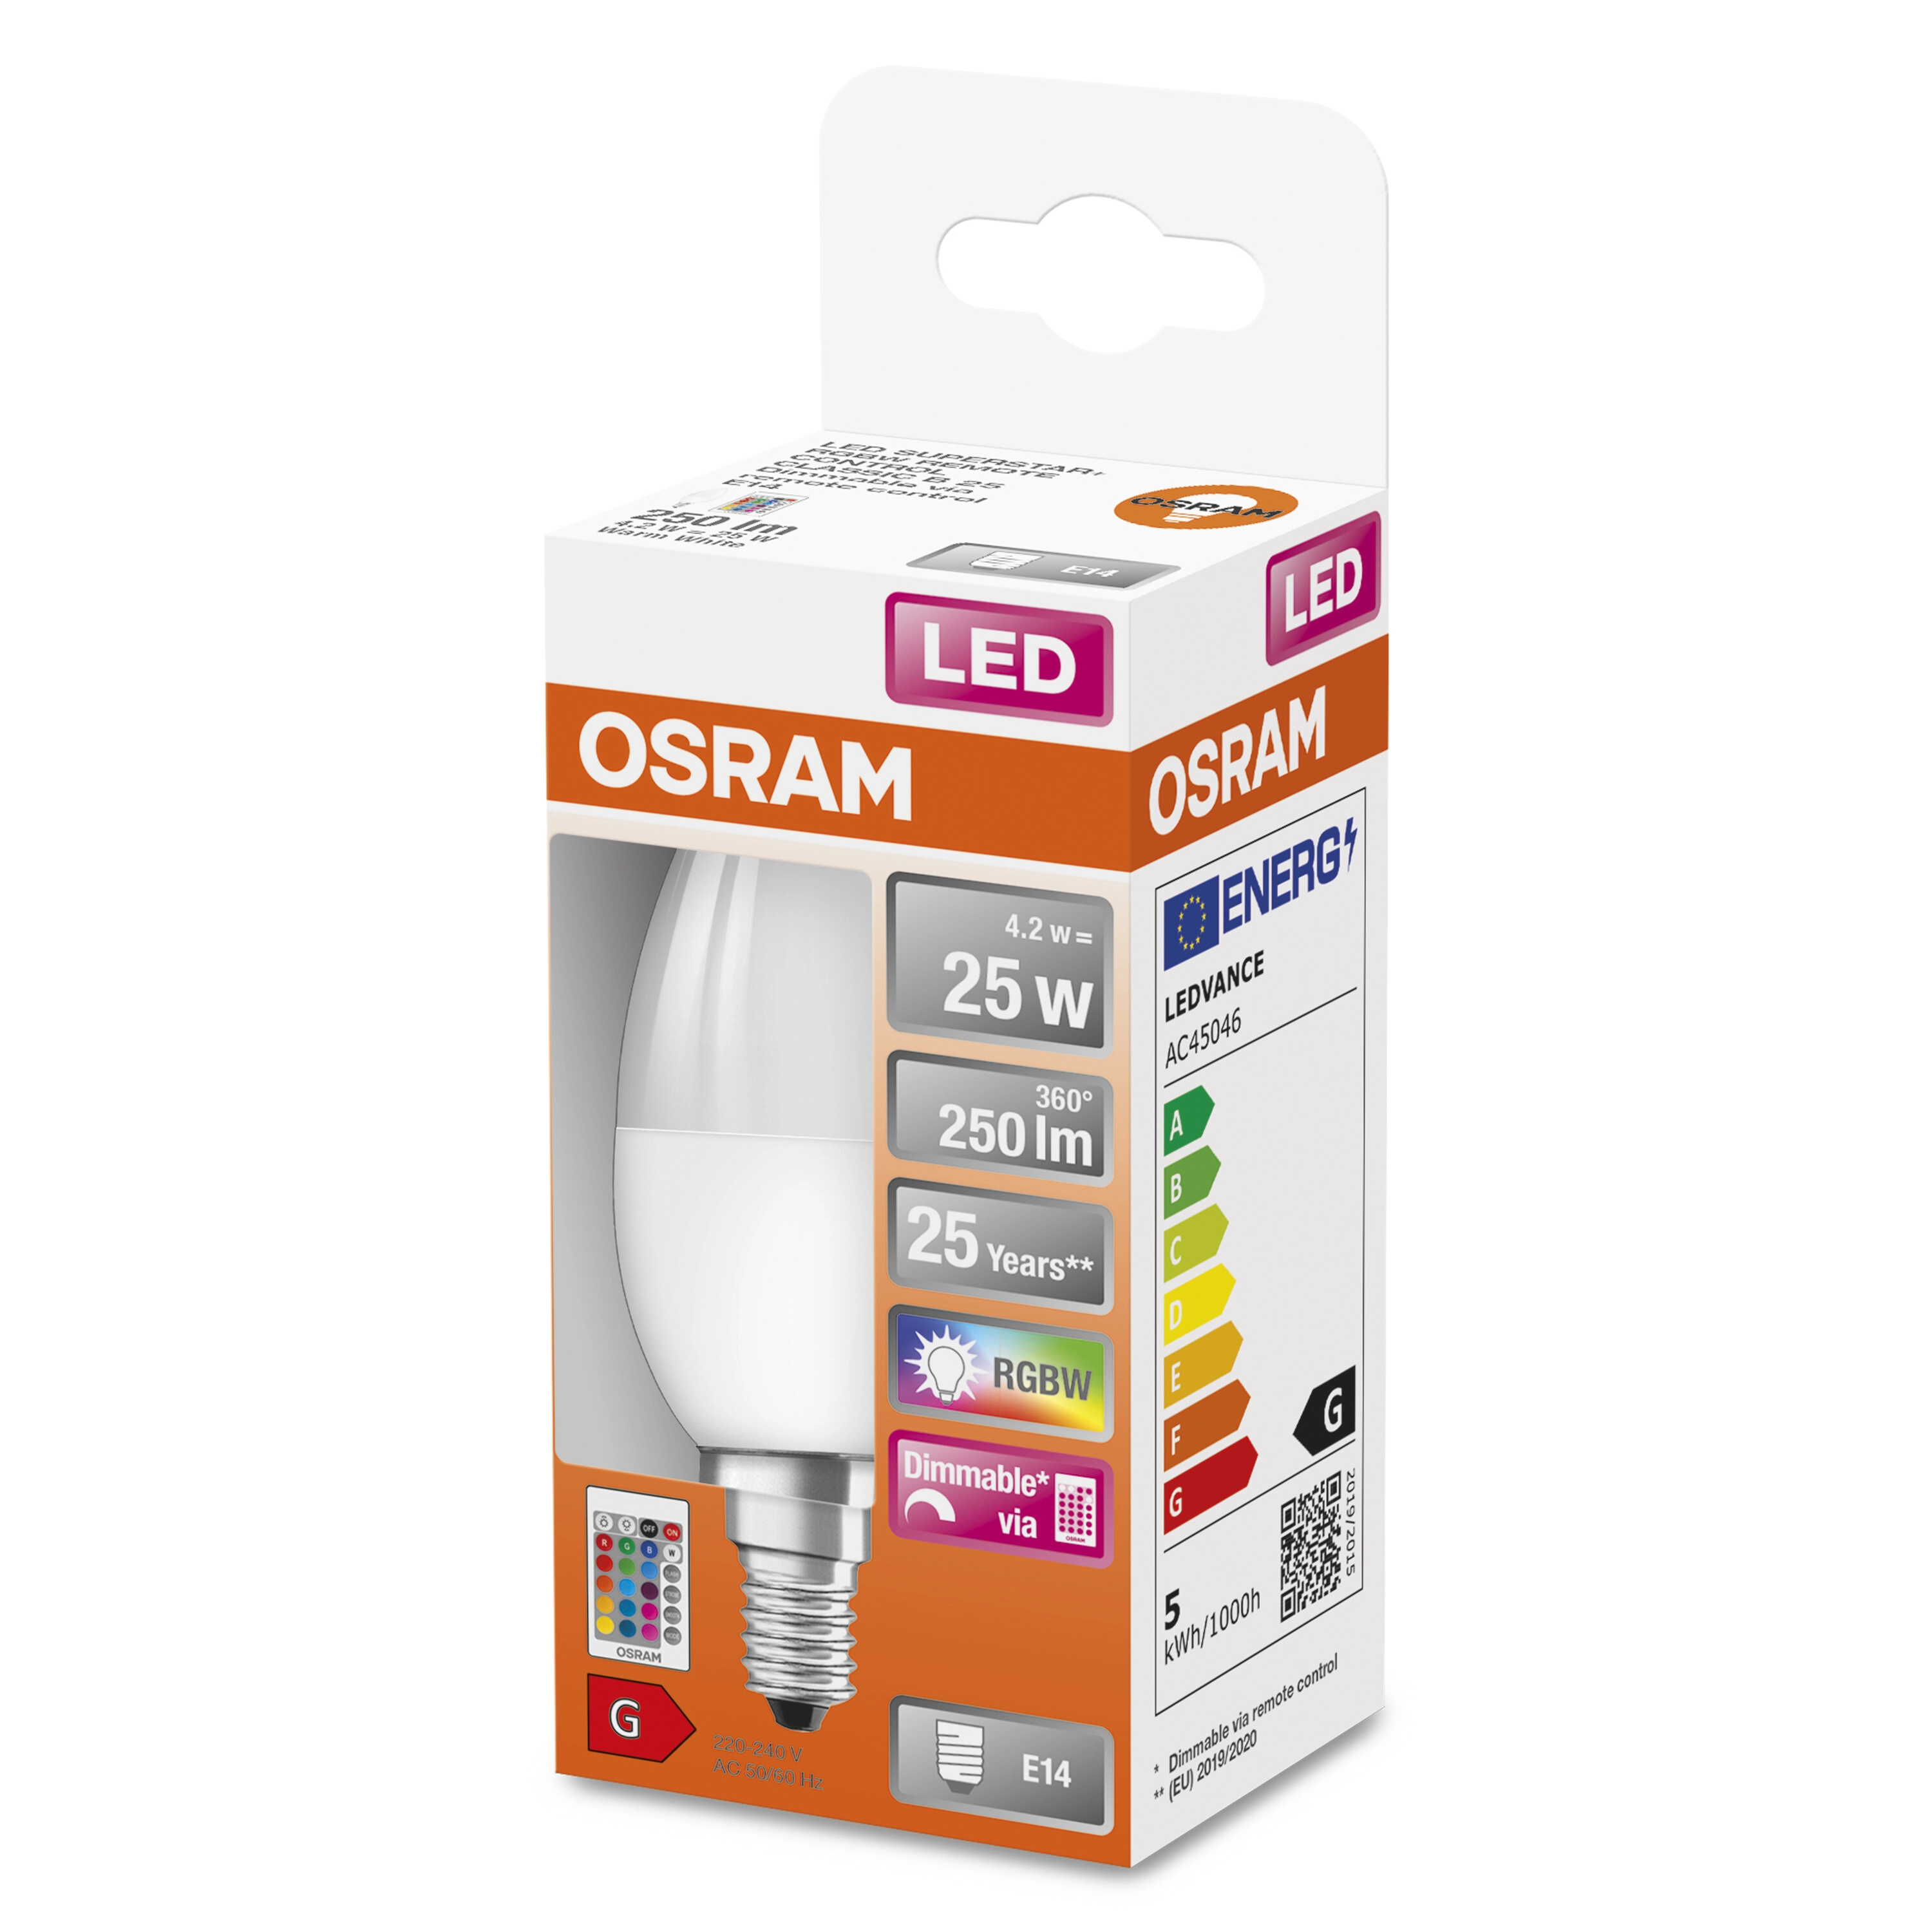 OSRAM Lampadina LED RGBW con telecomando, forma a candela, 25W E14